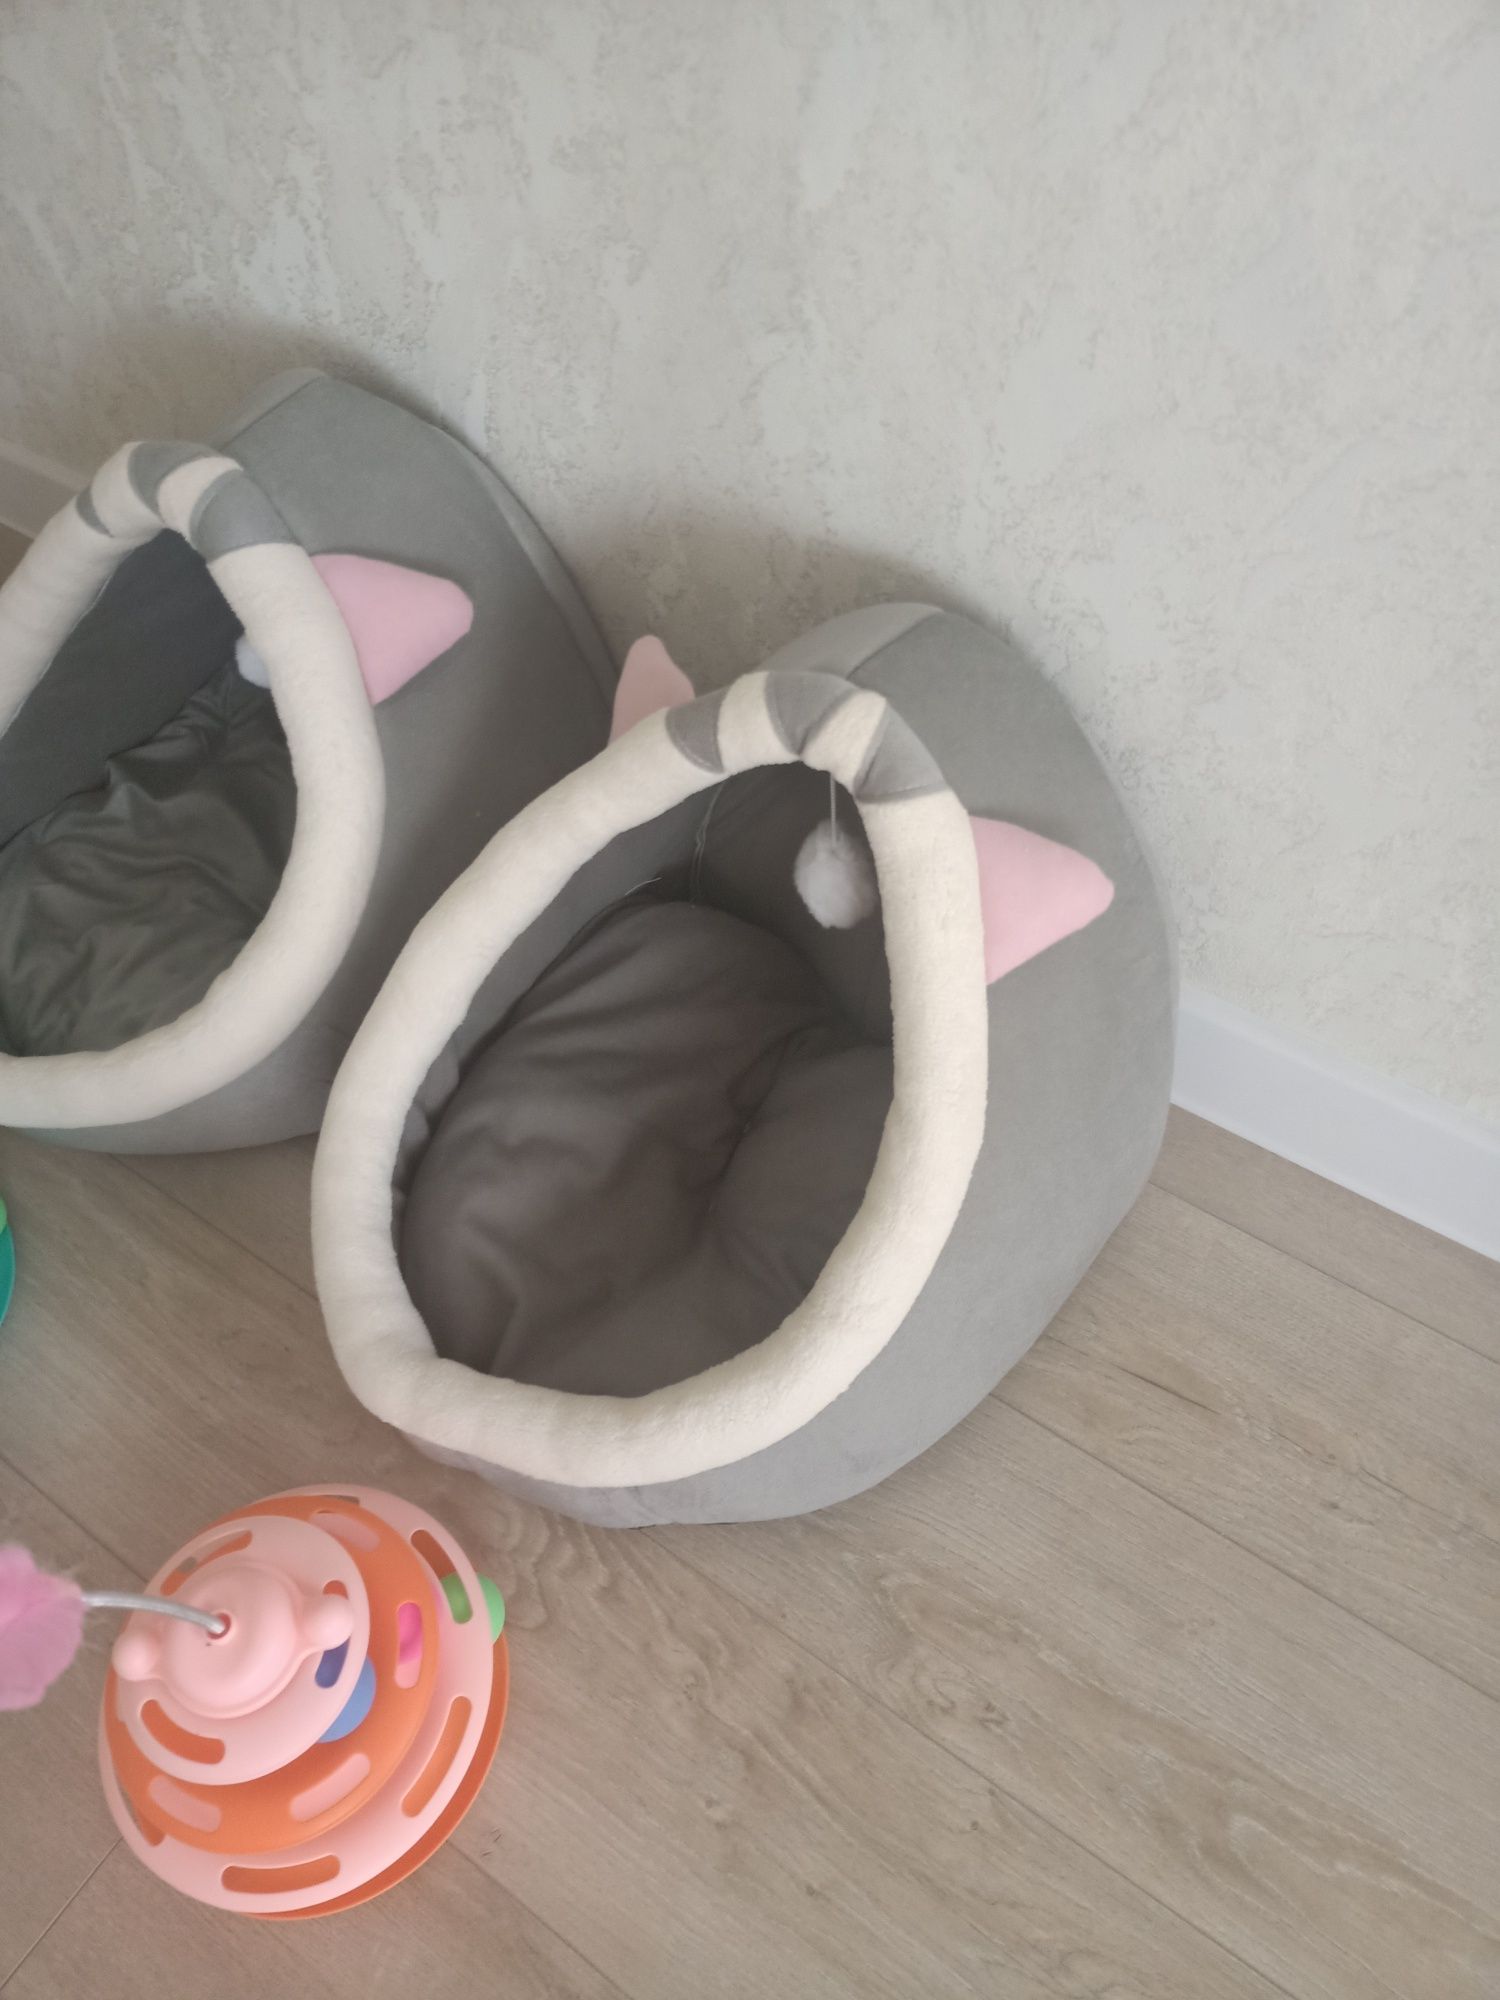 Домик для кошки или собачки игрушка в подарок 5500 тен